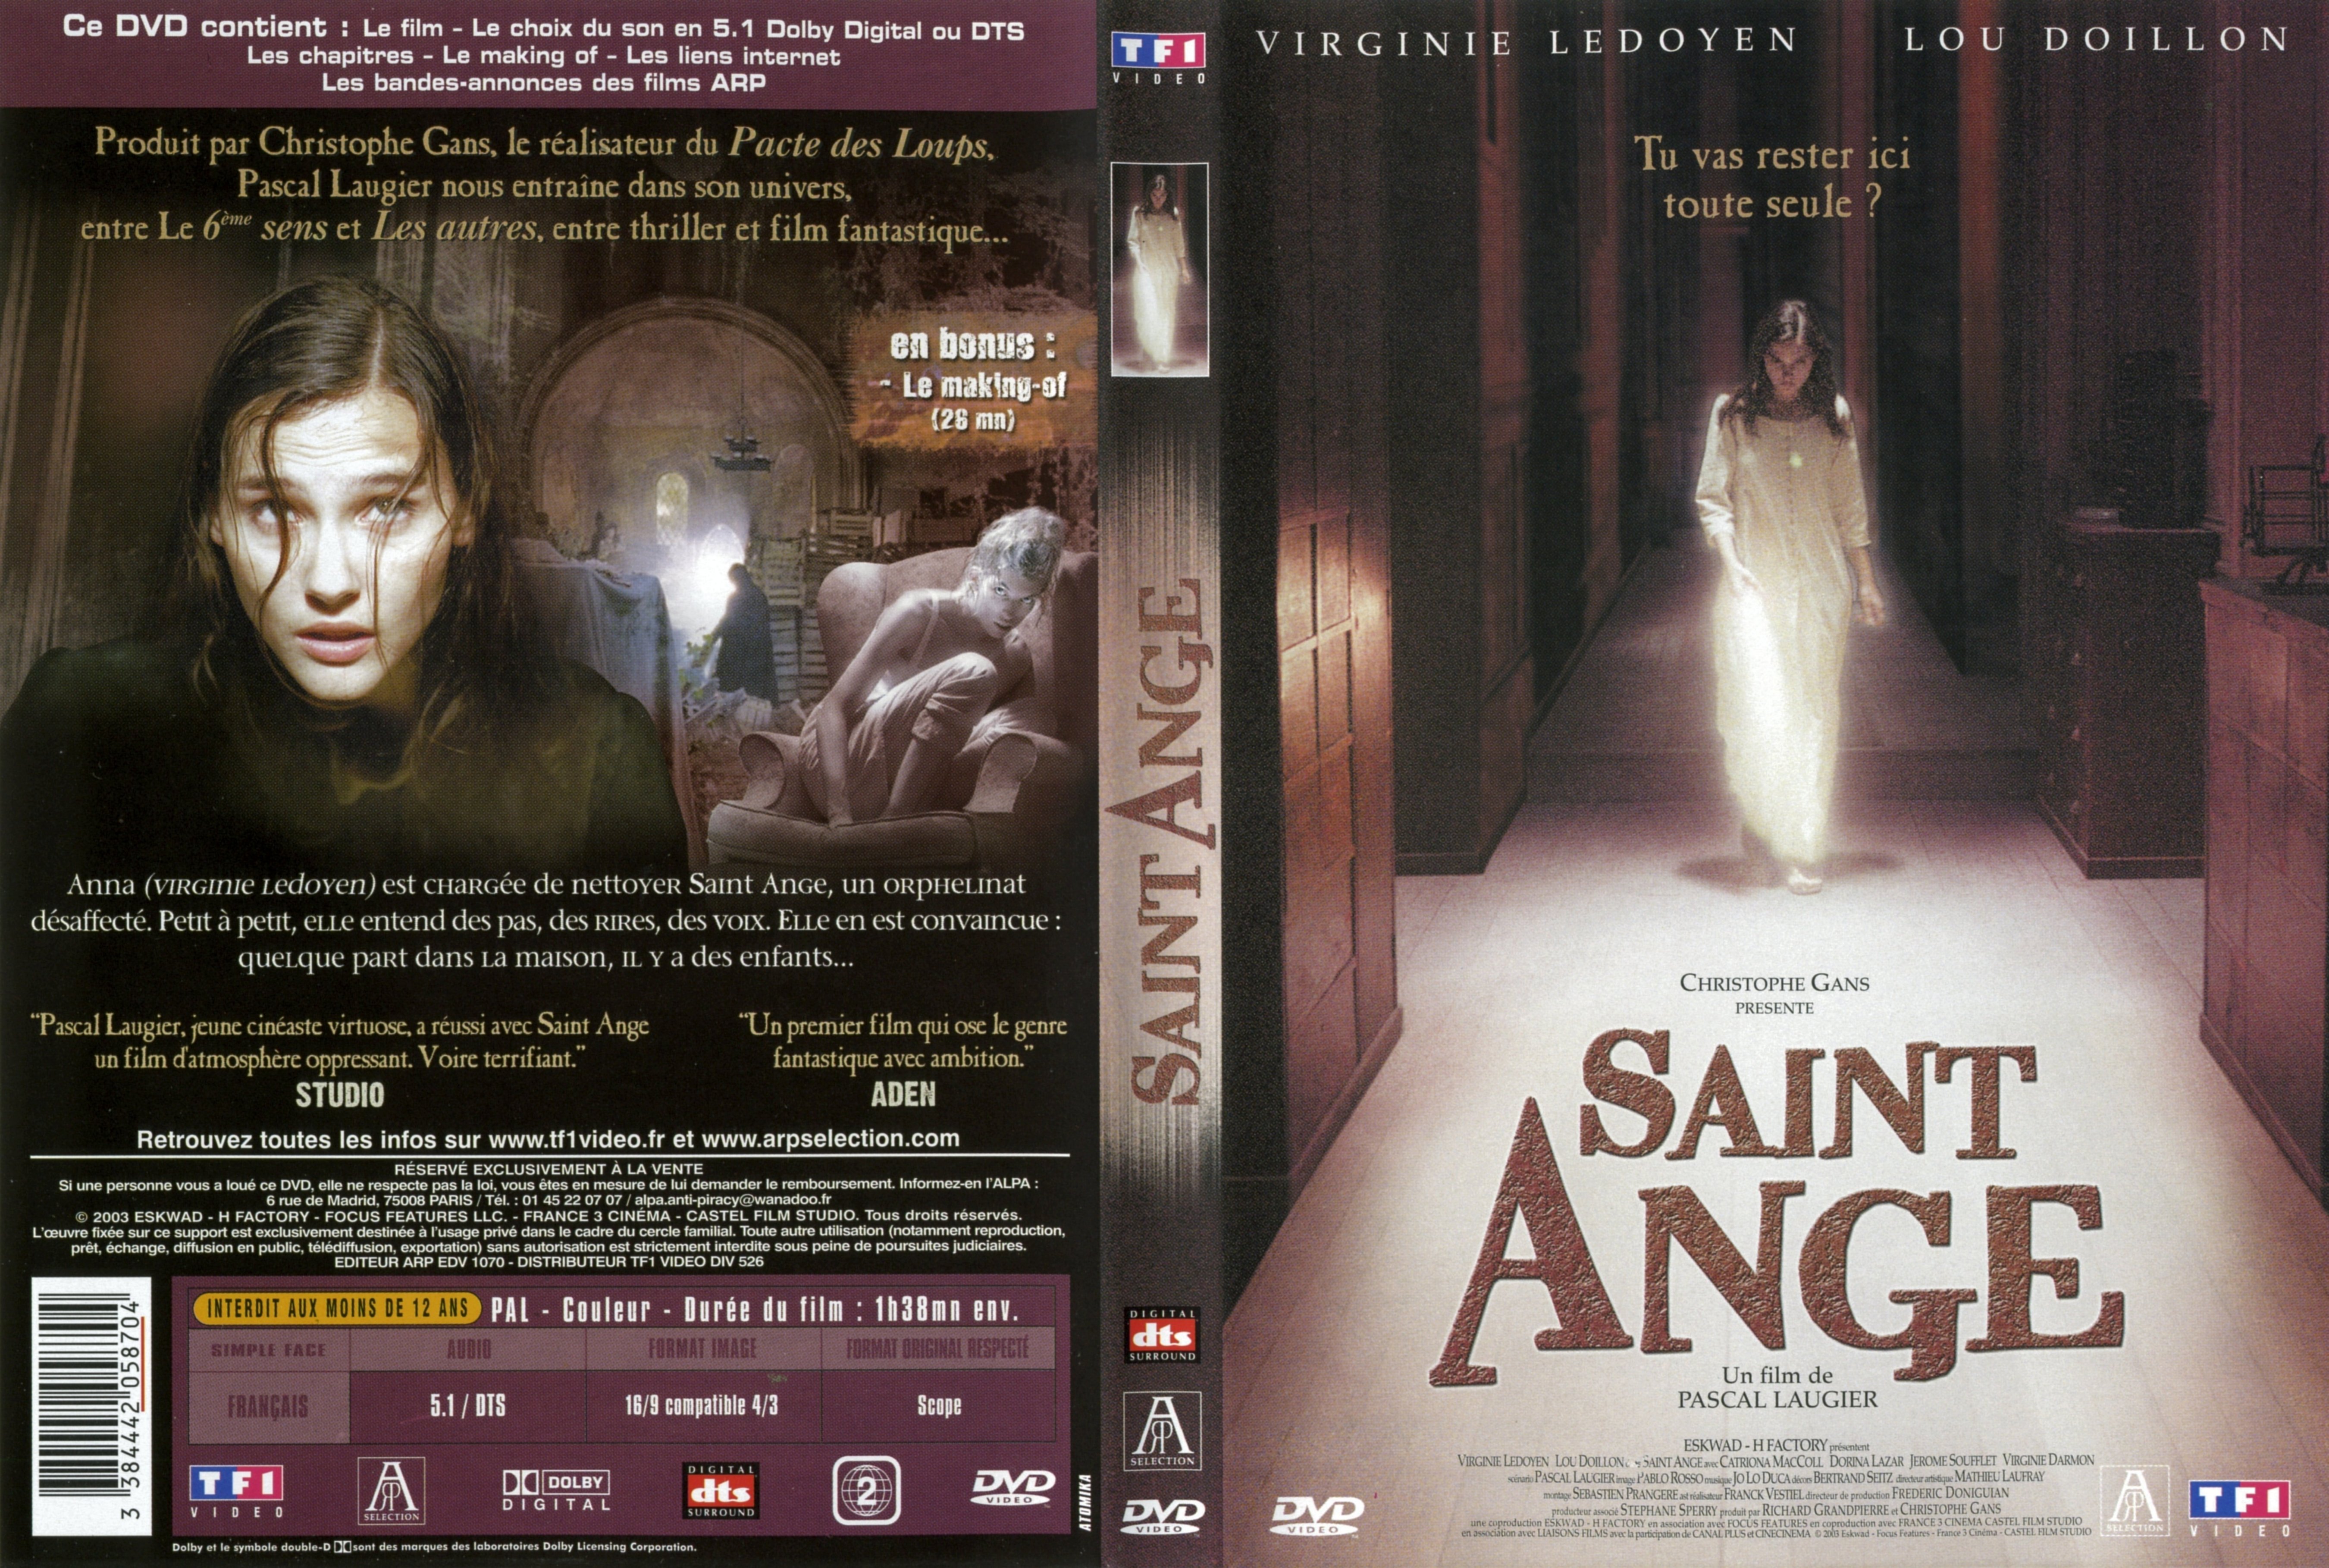 Jaquette DVD Saint Ange